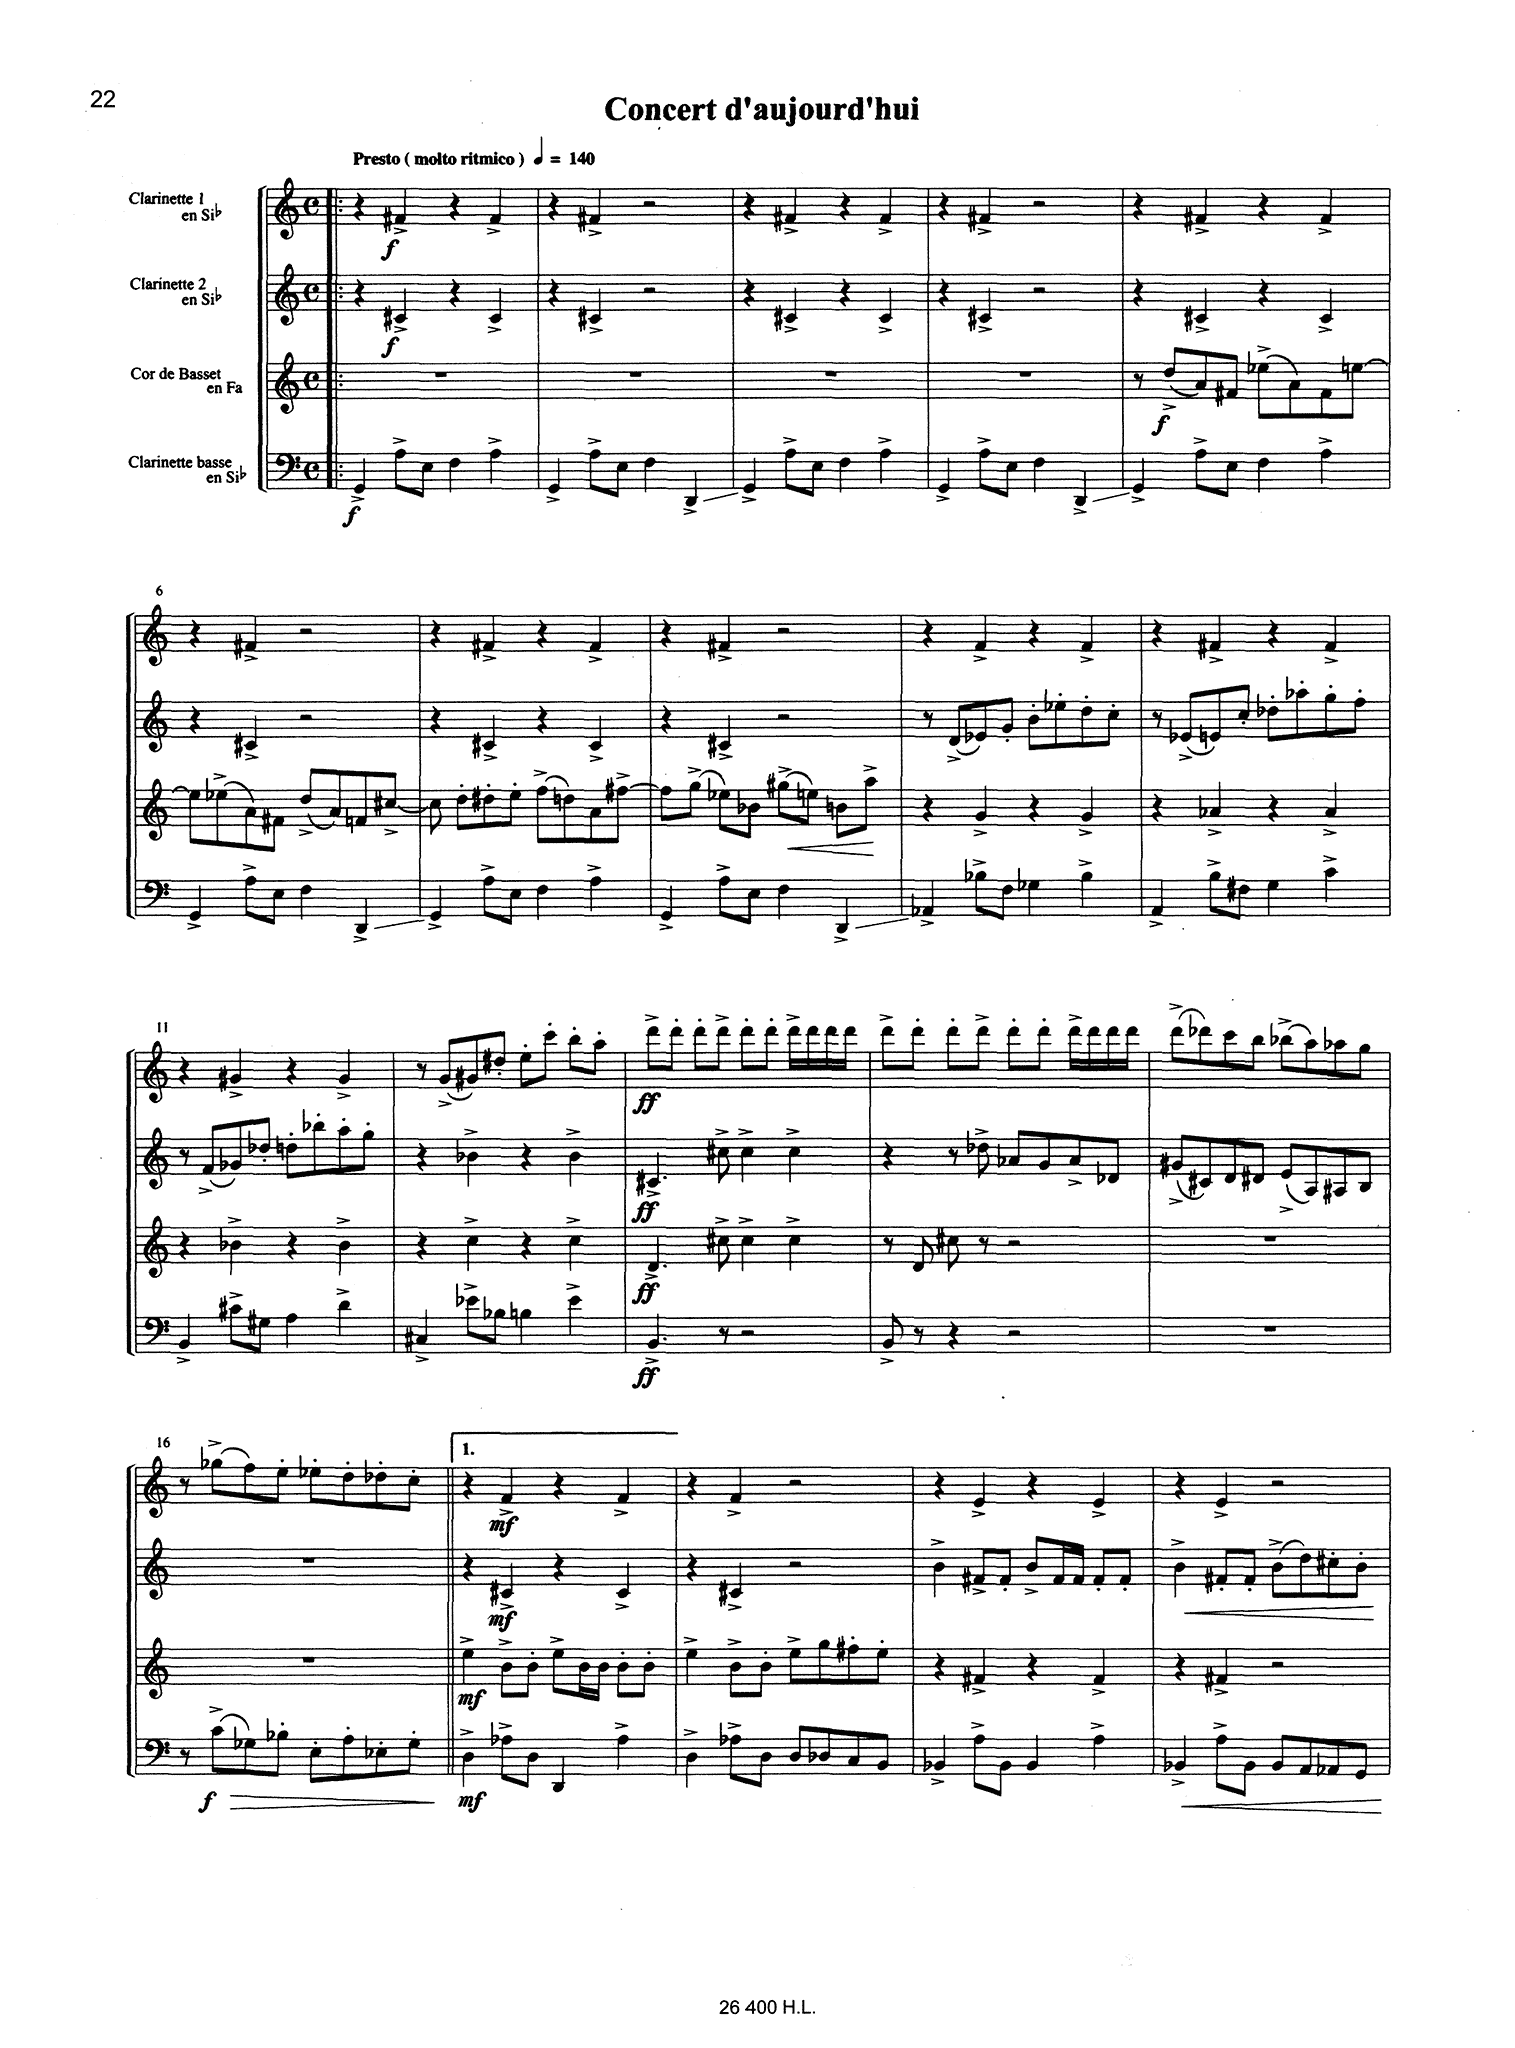 Piazzolla Histoire du Tango clarinet quartet arrangement - Movement 4